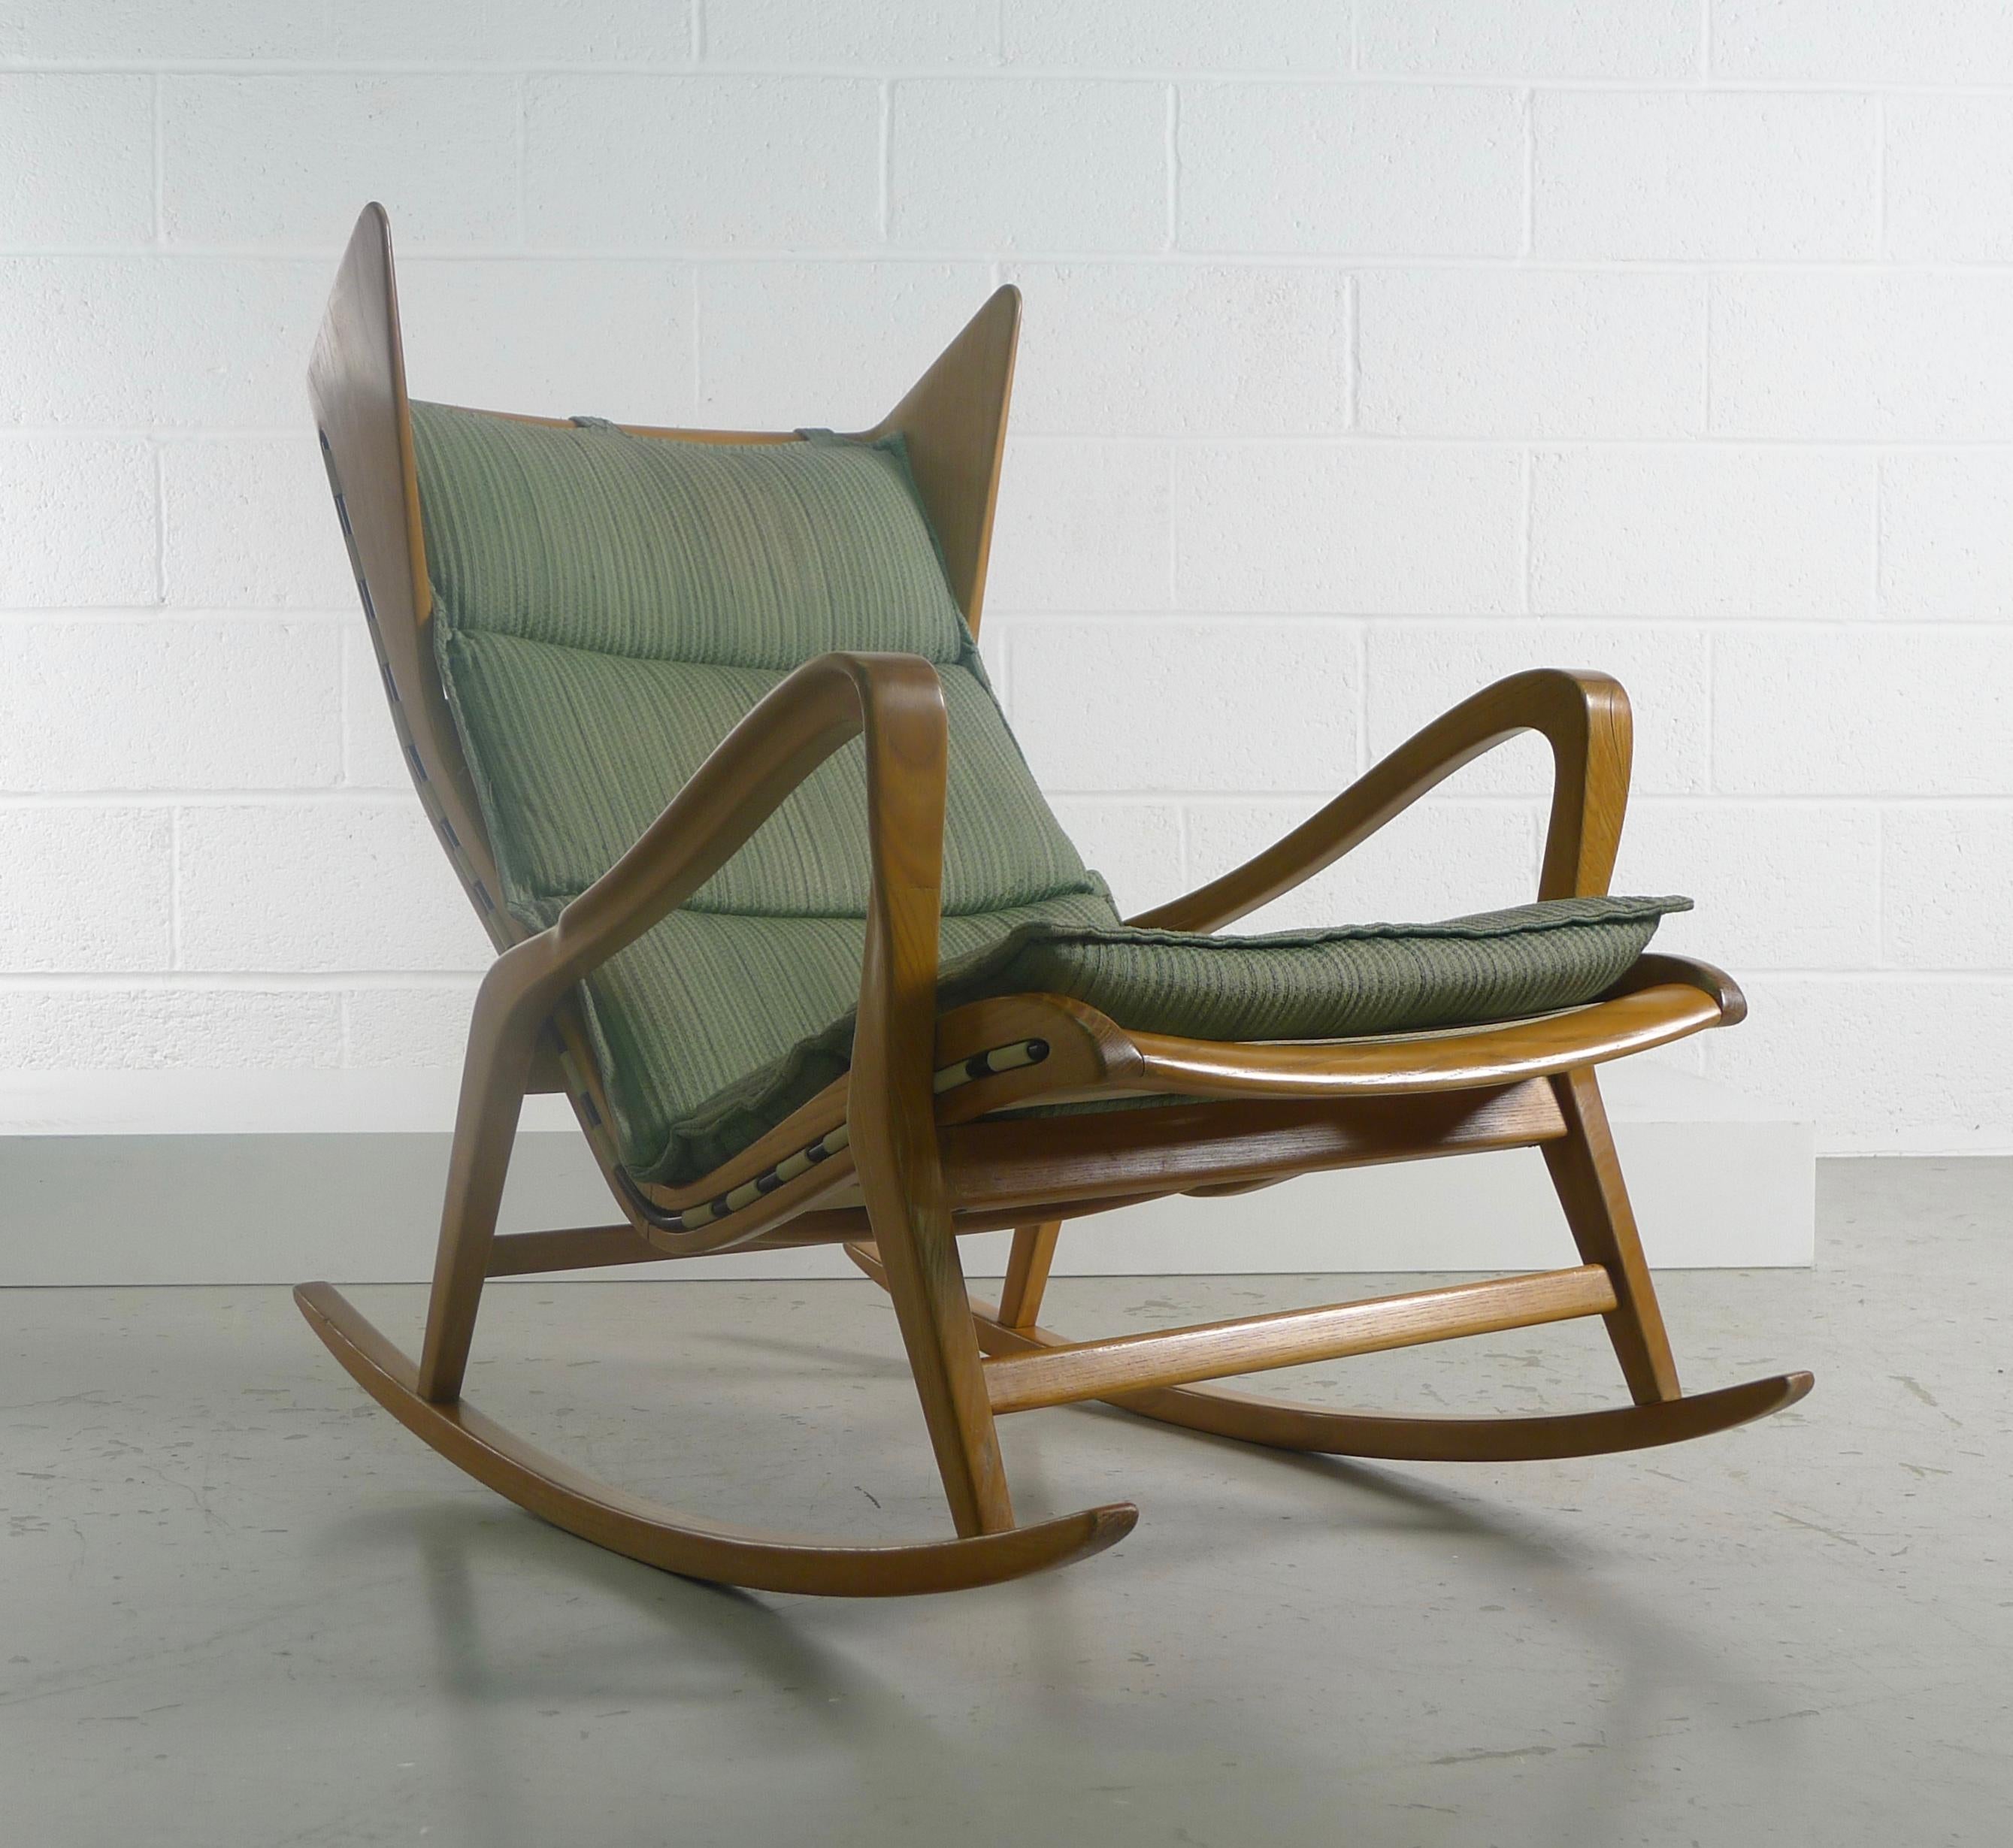 Italian Studio Technica Cassina, Rocking Chair Model 572, circa 1955